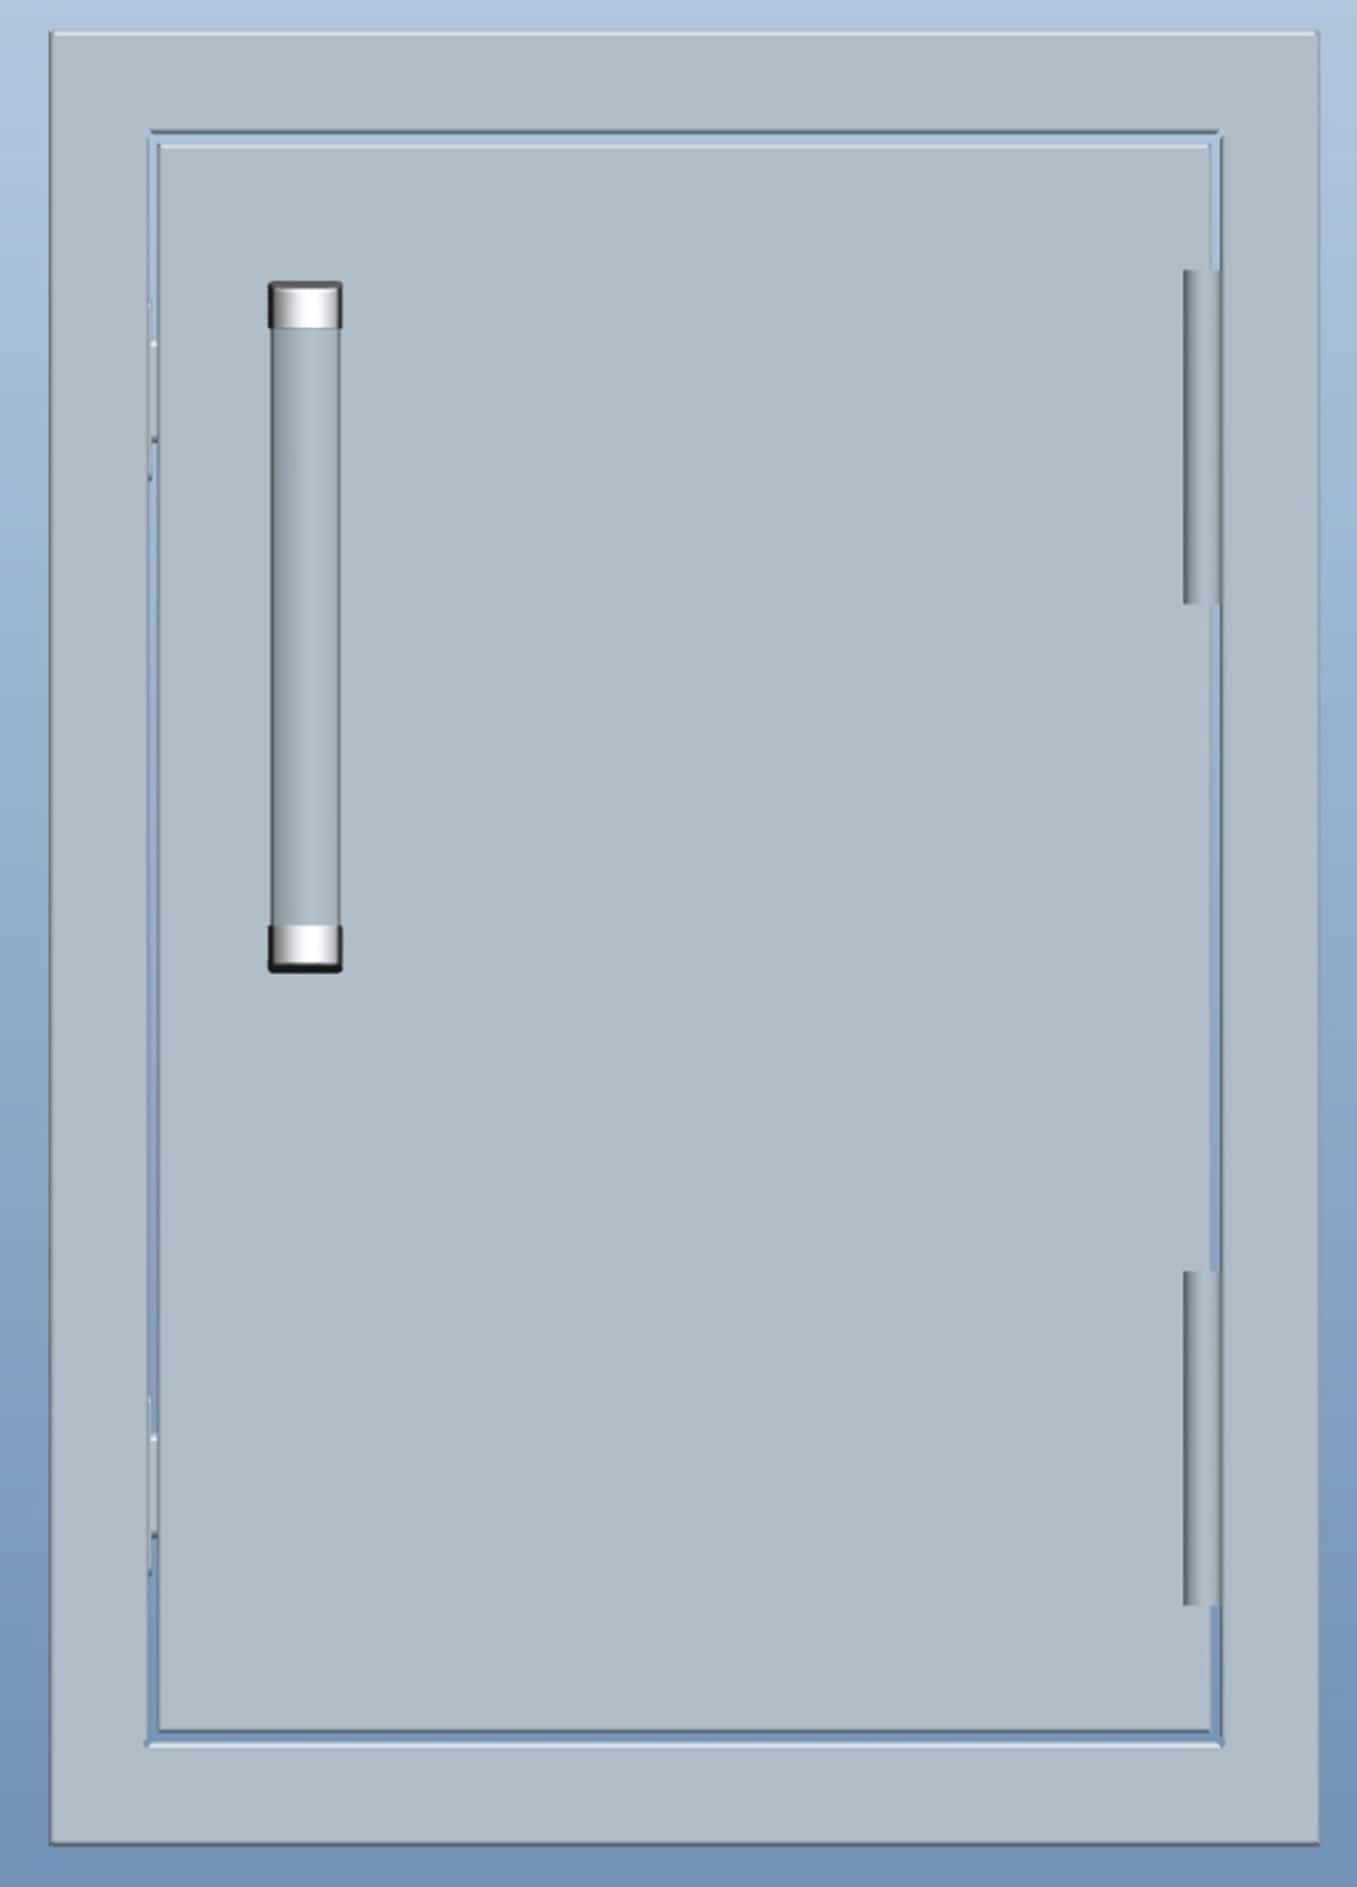 Bonfire Stainless Steel Outdoor Kitchen Storage Vertical door 14″x20″ Access Door - CBASDV1420